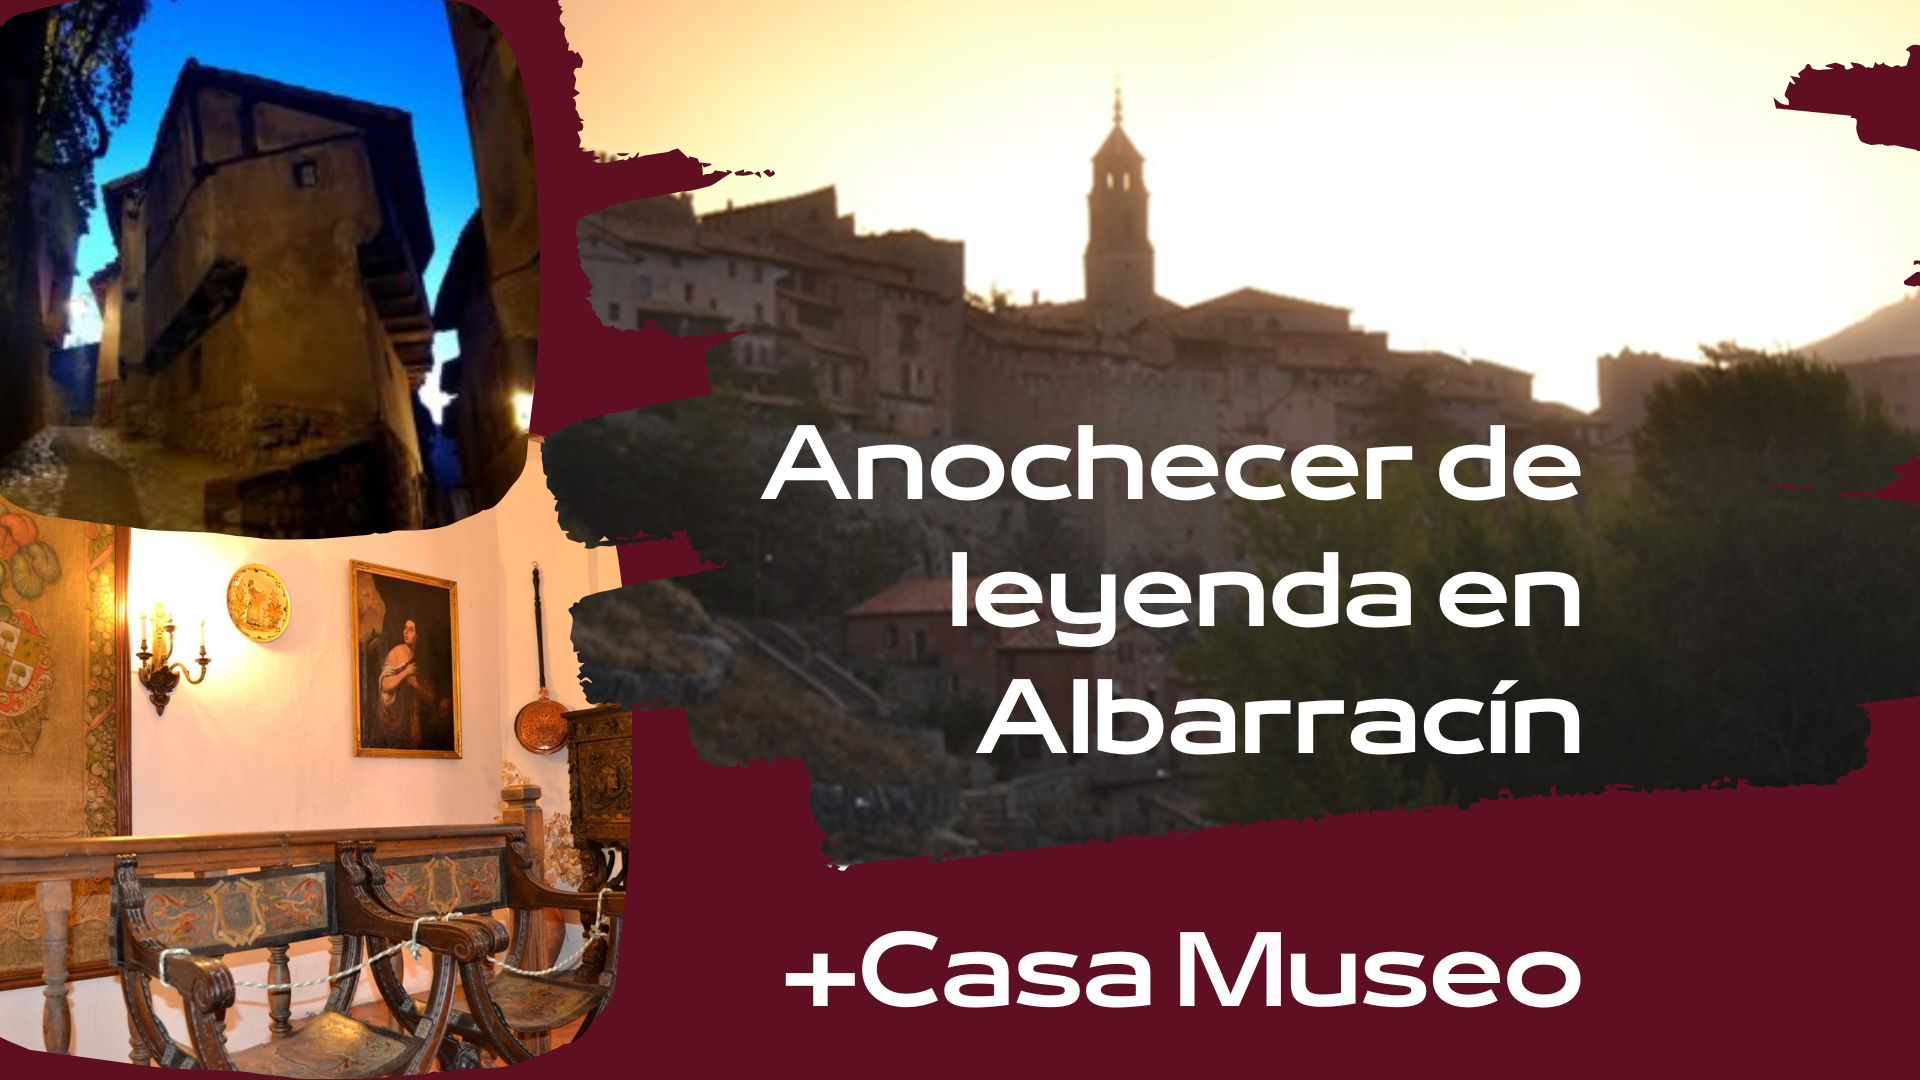 Visita Guiada en Anochecer de Leyendas en Albarracín y Casa Museo! 7 de Enero, 17:30h!